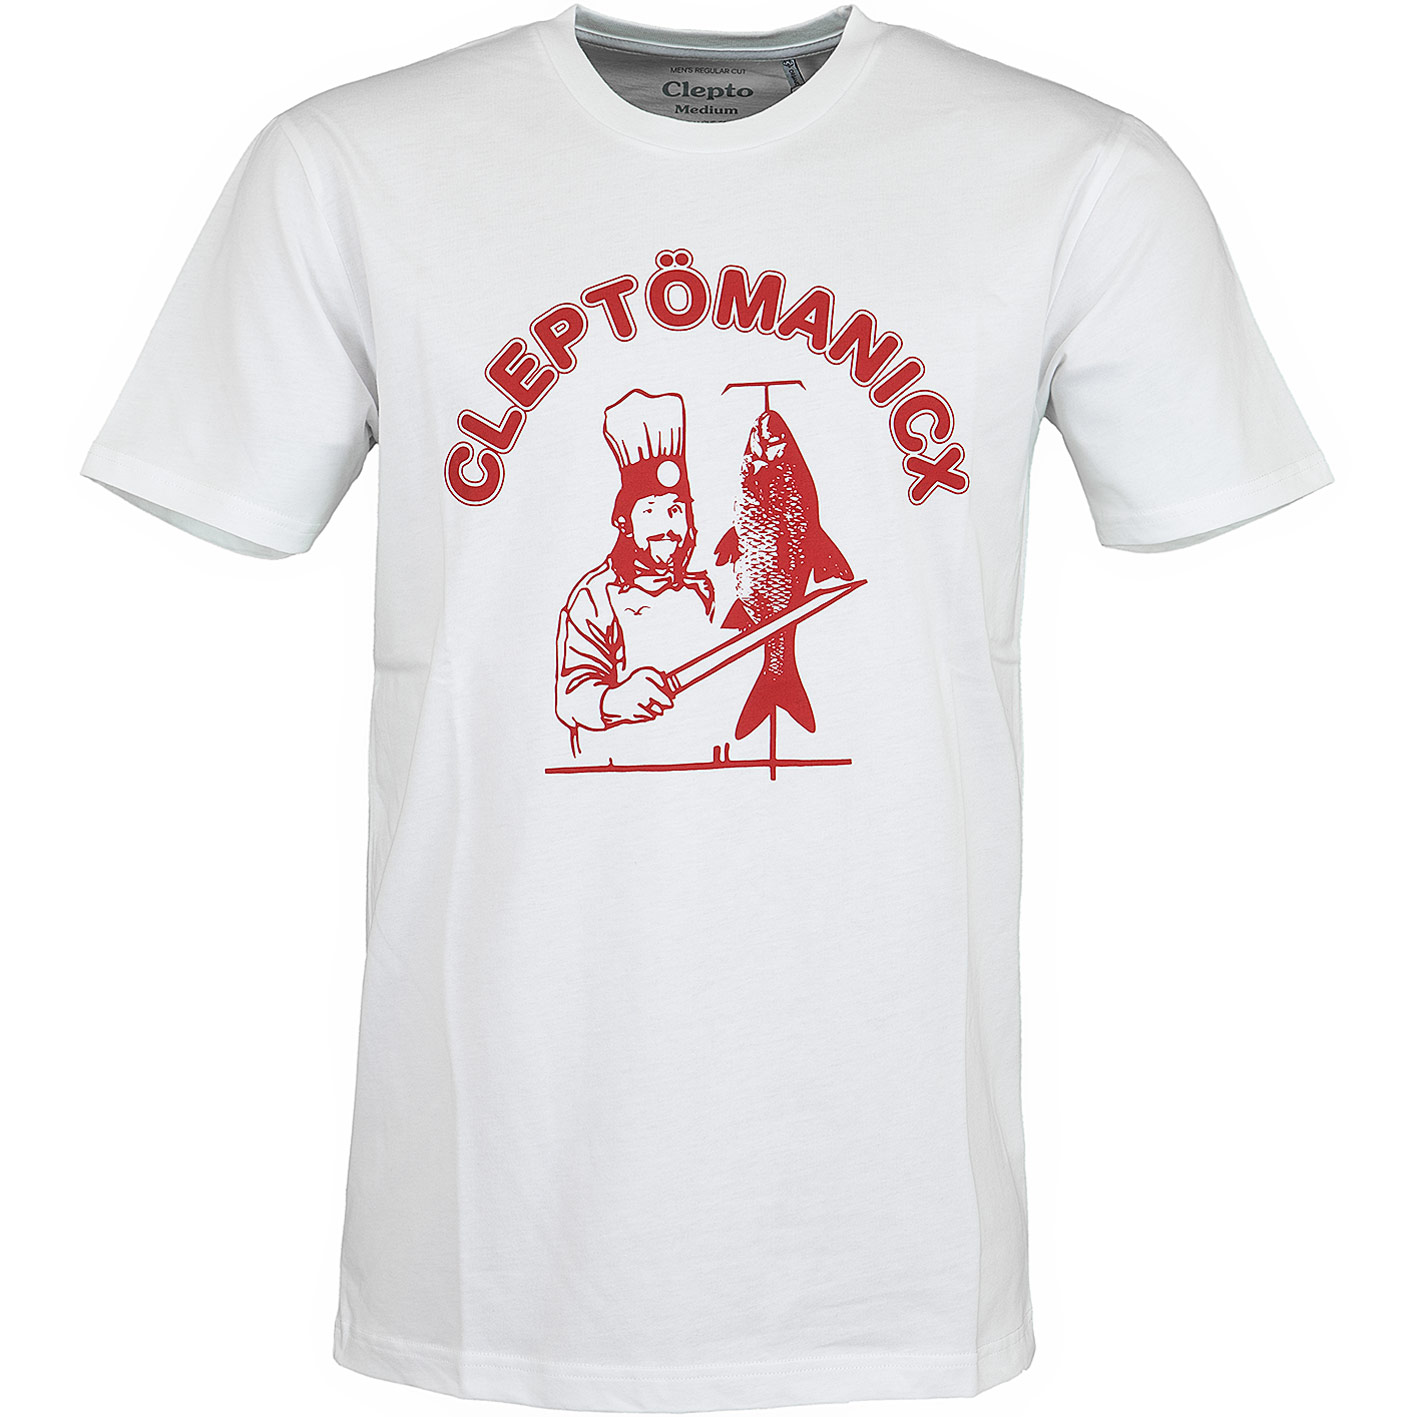 ☆ Cleptomanicx T-Shirt Dönicx weiß - hier bestellen!